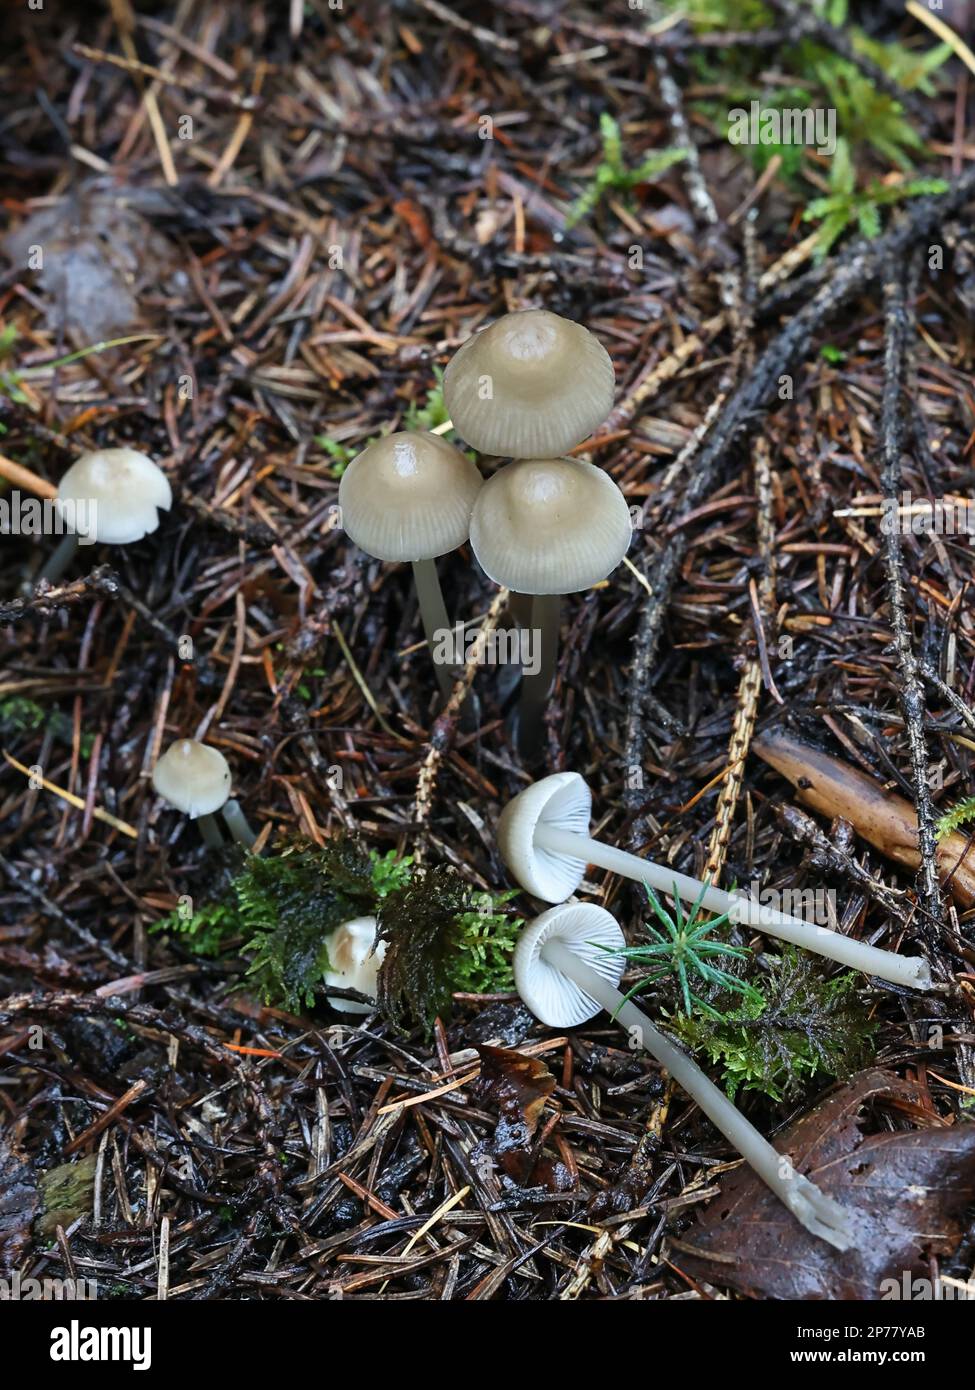 Mycena galericulata, auch bekannt als Haube oder Torque mycena, Wildpilz aus Finnland Stockfoto